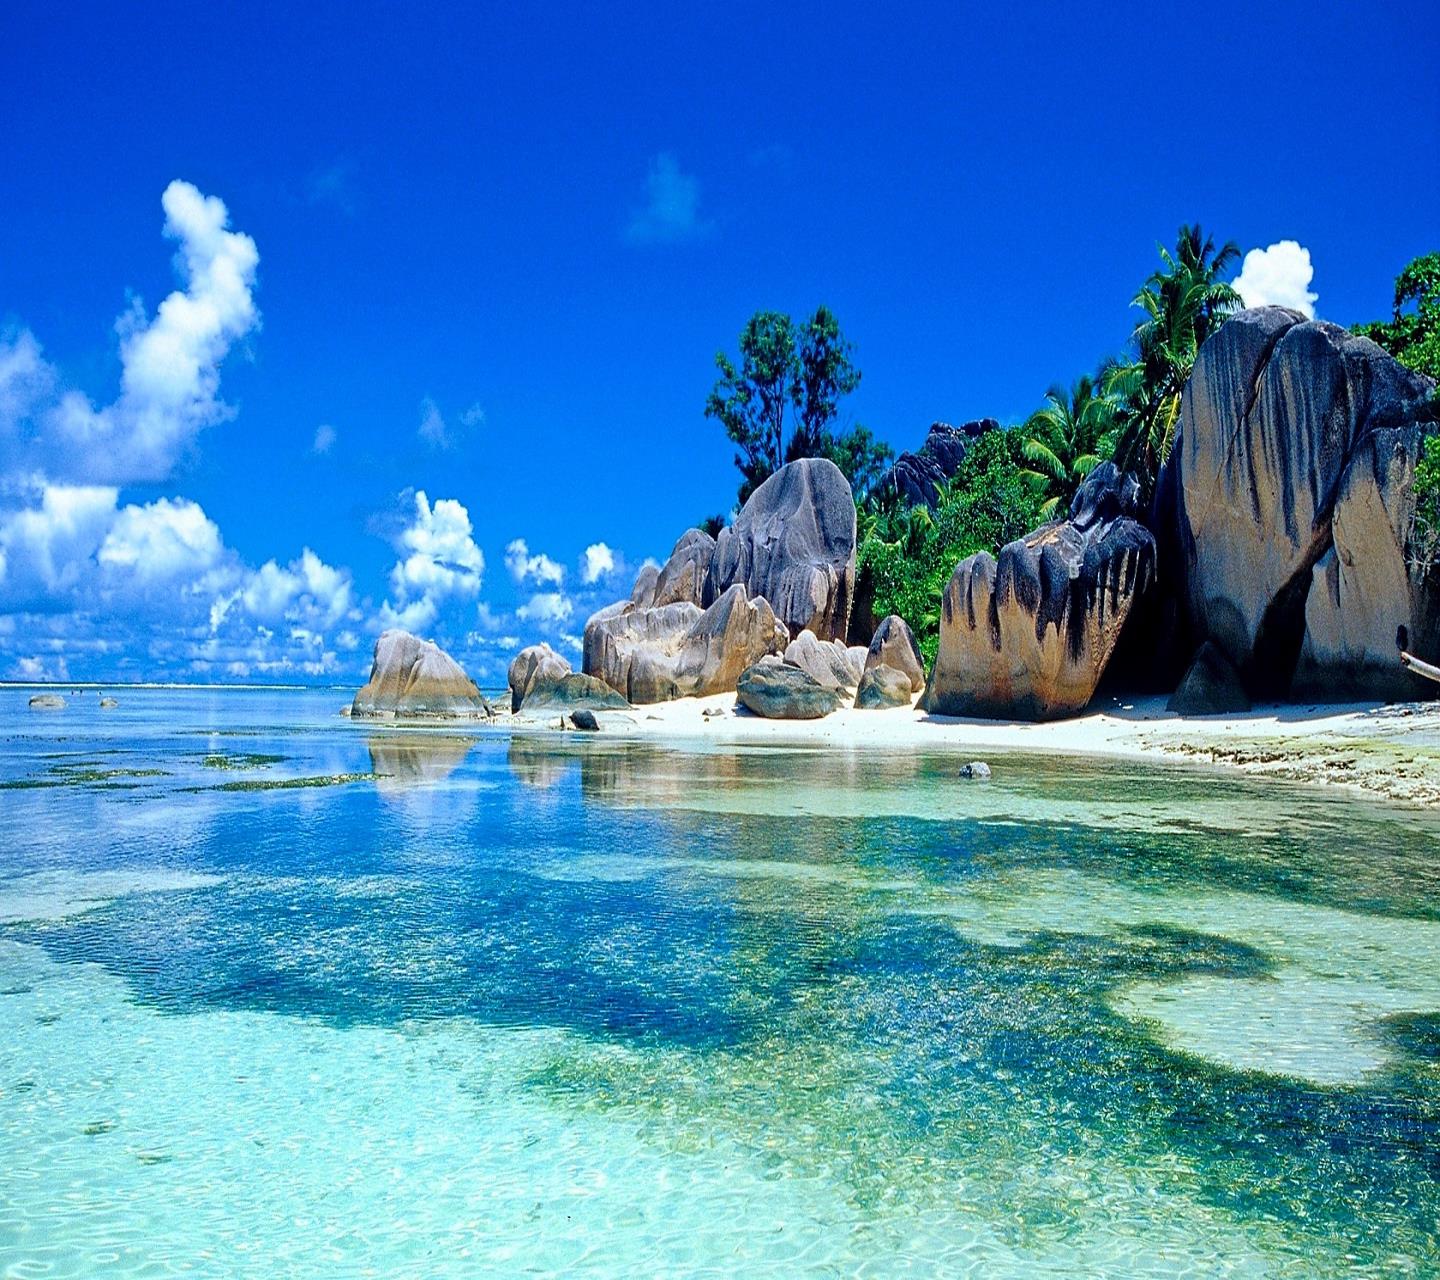 Una spiaggia tropicale - Sfondi per Android, i più belli da scaricare gratis